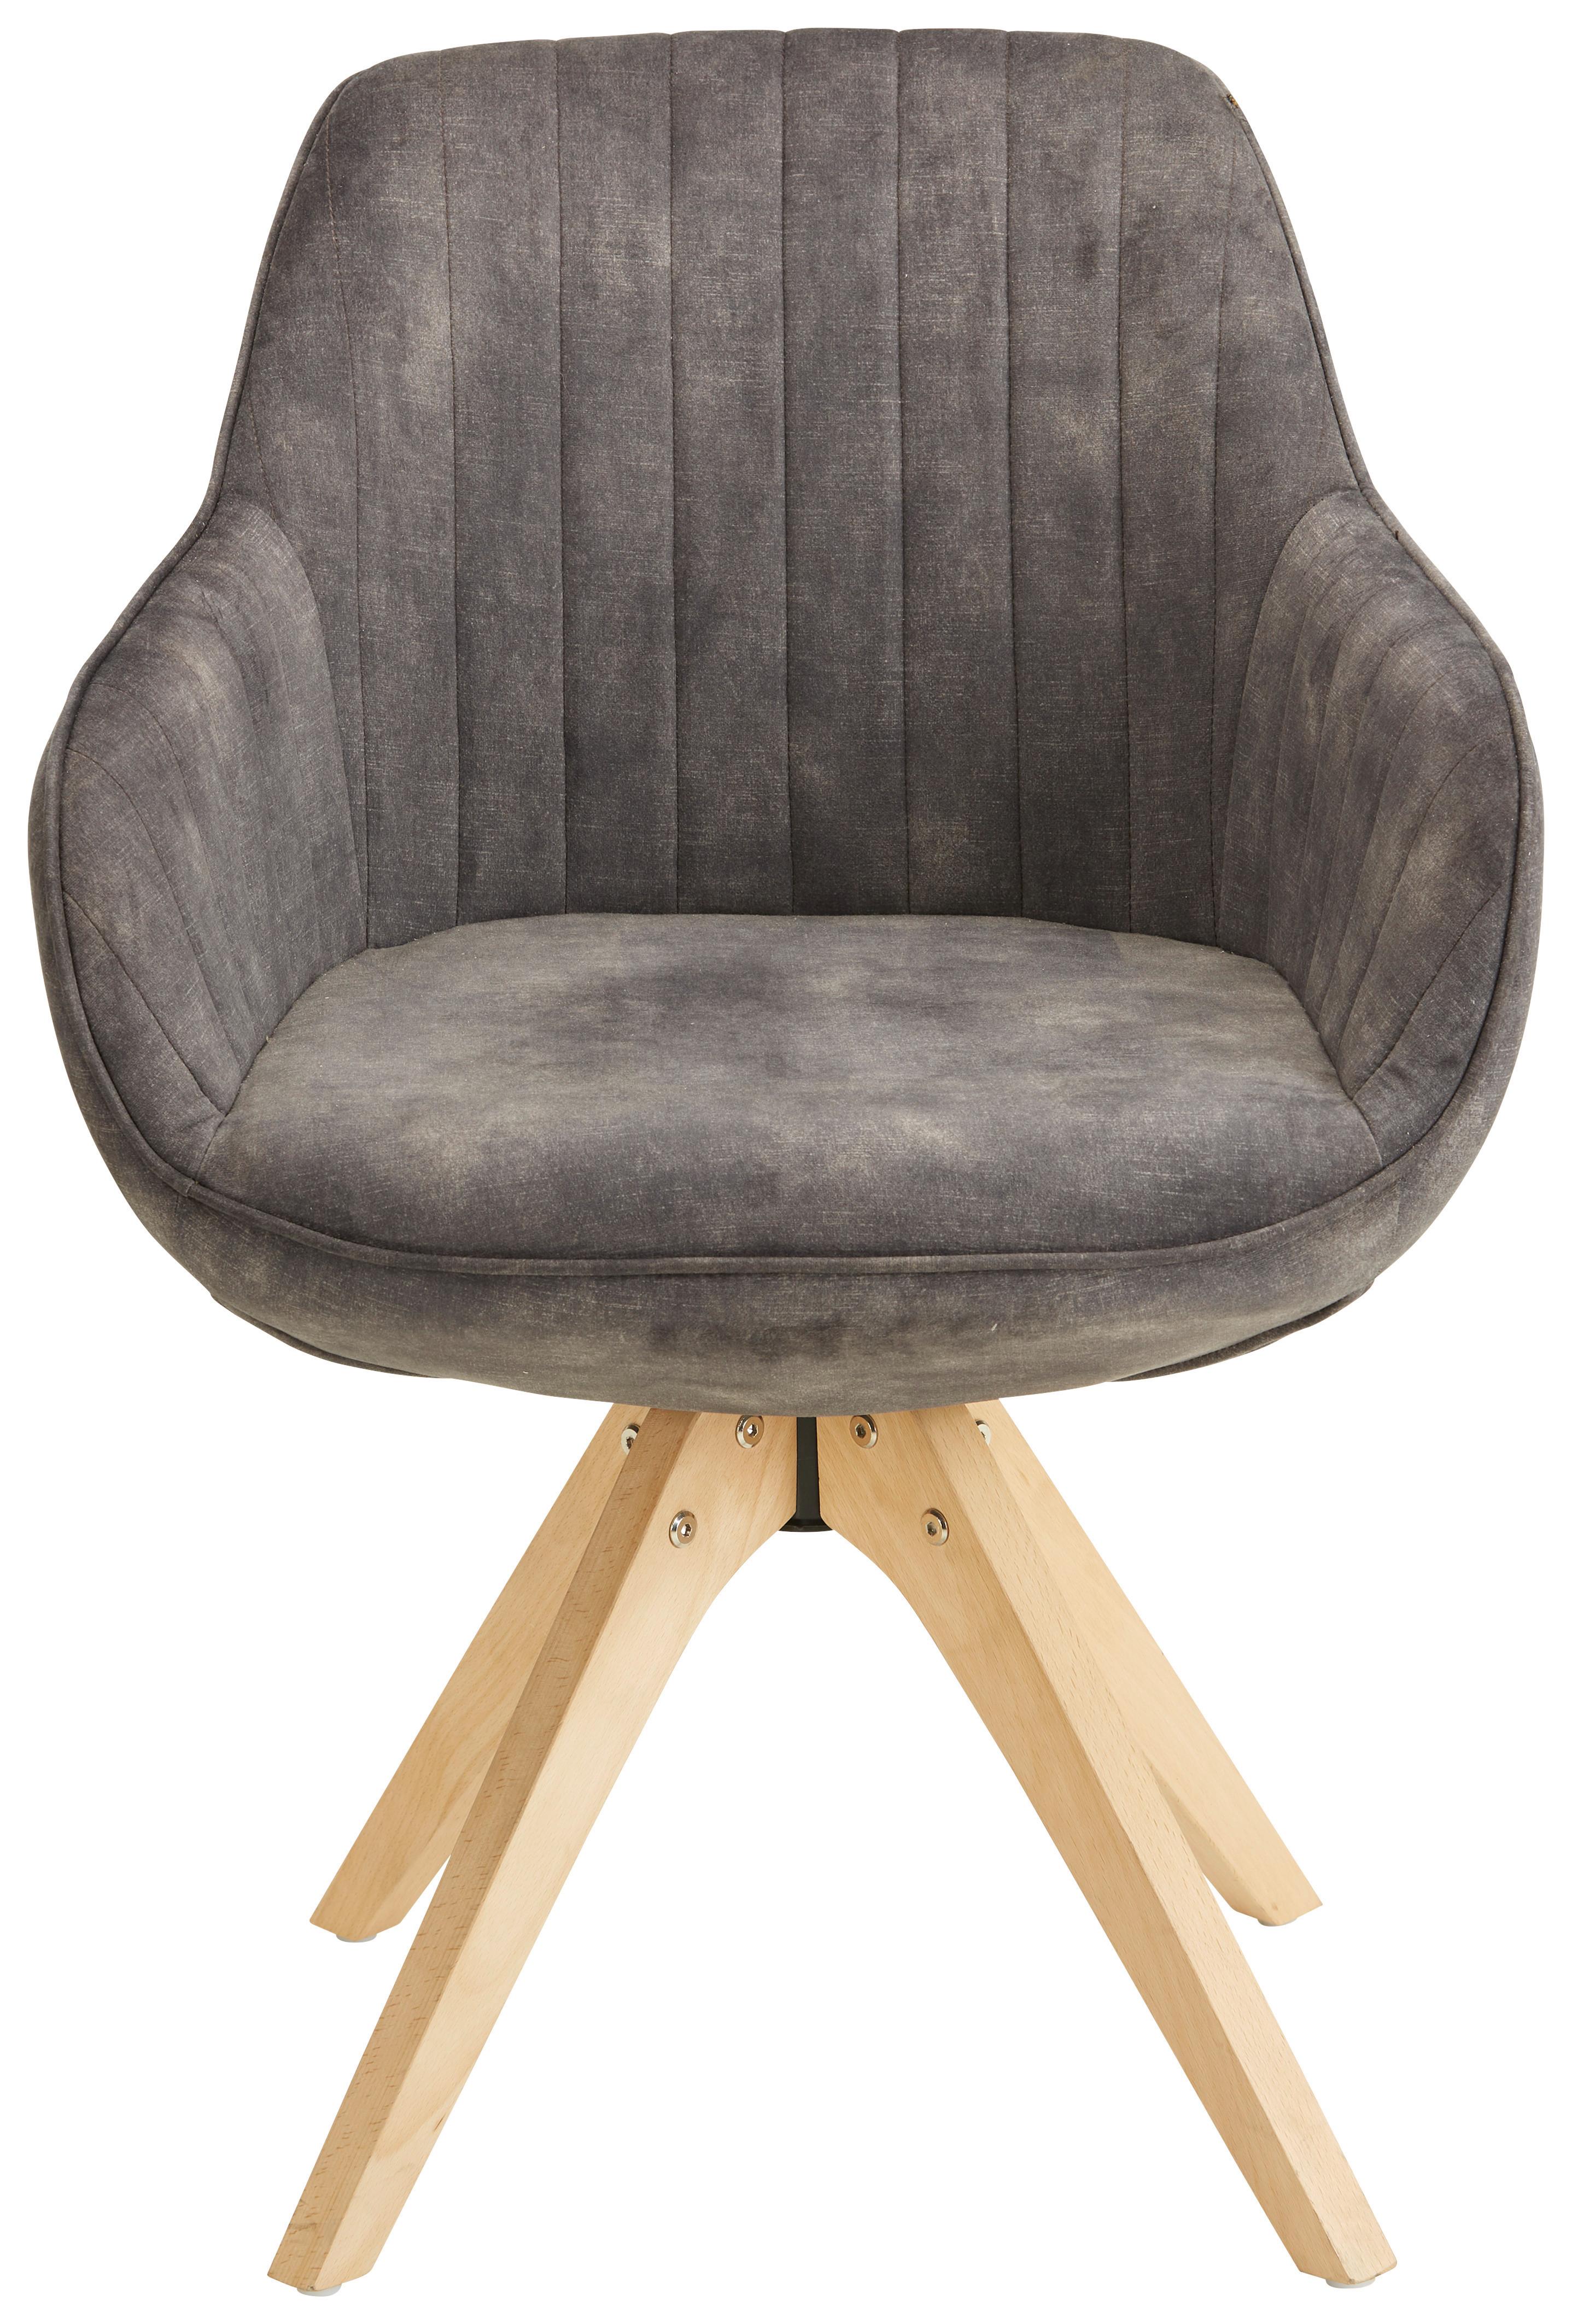 Židle S Područkami Relax - přírodní barvy/hnědá, Moderní, dřevo/textil (60/61/82cm) - Modern Living